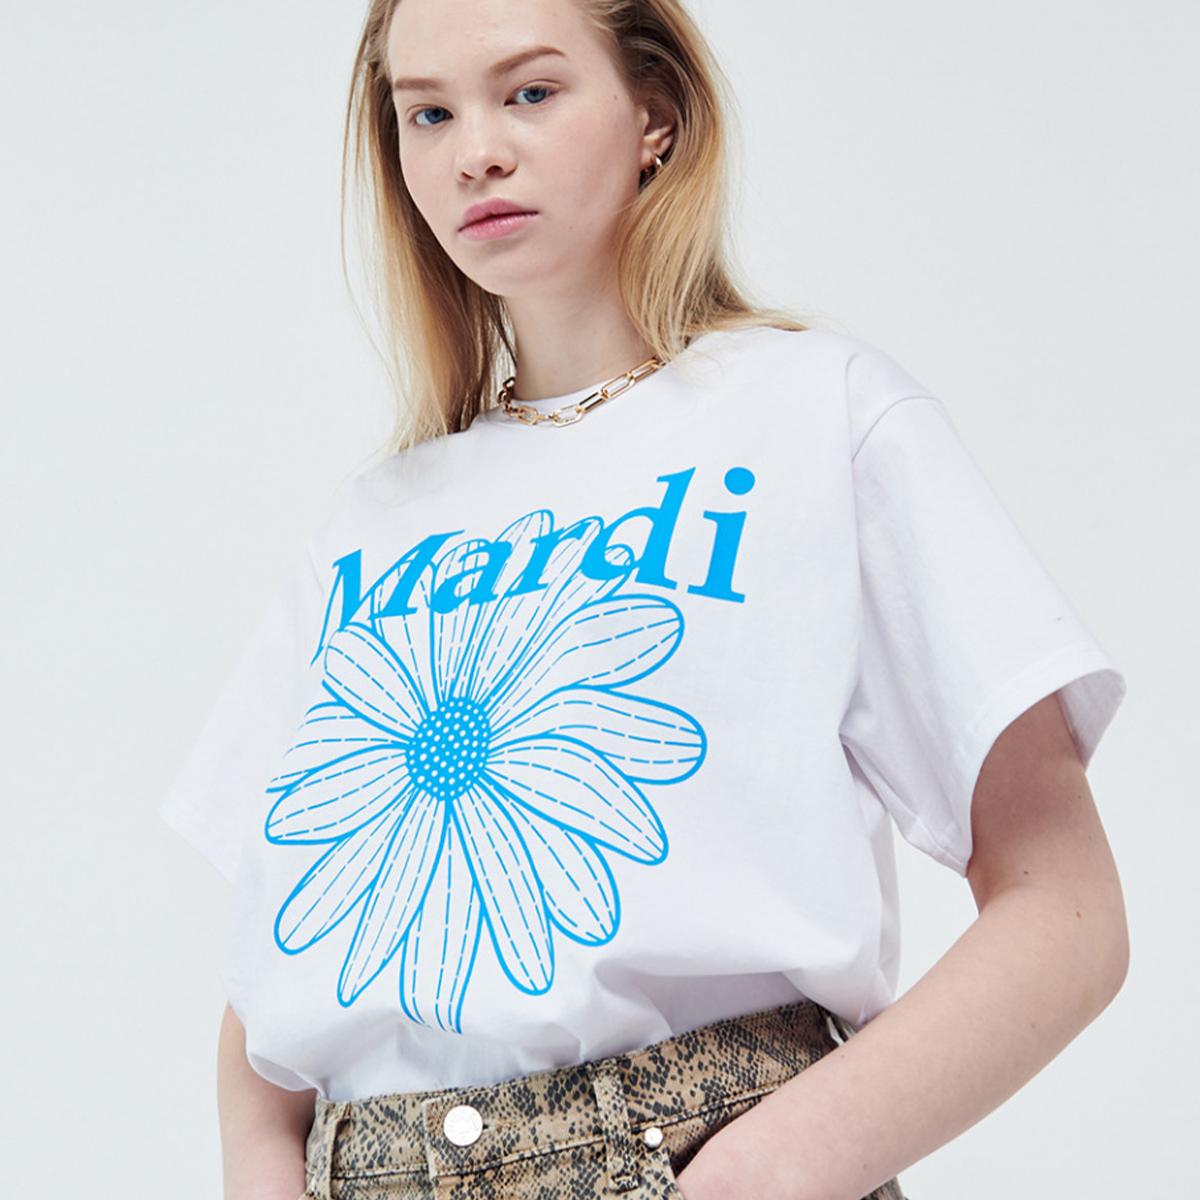 Flowermardi T-shirt (White Fluoblue)